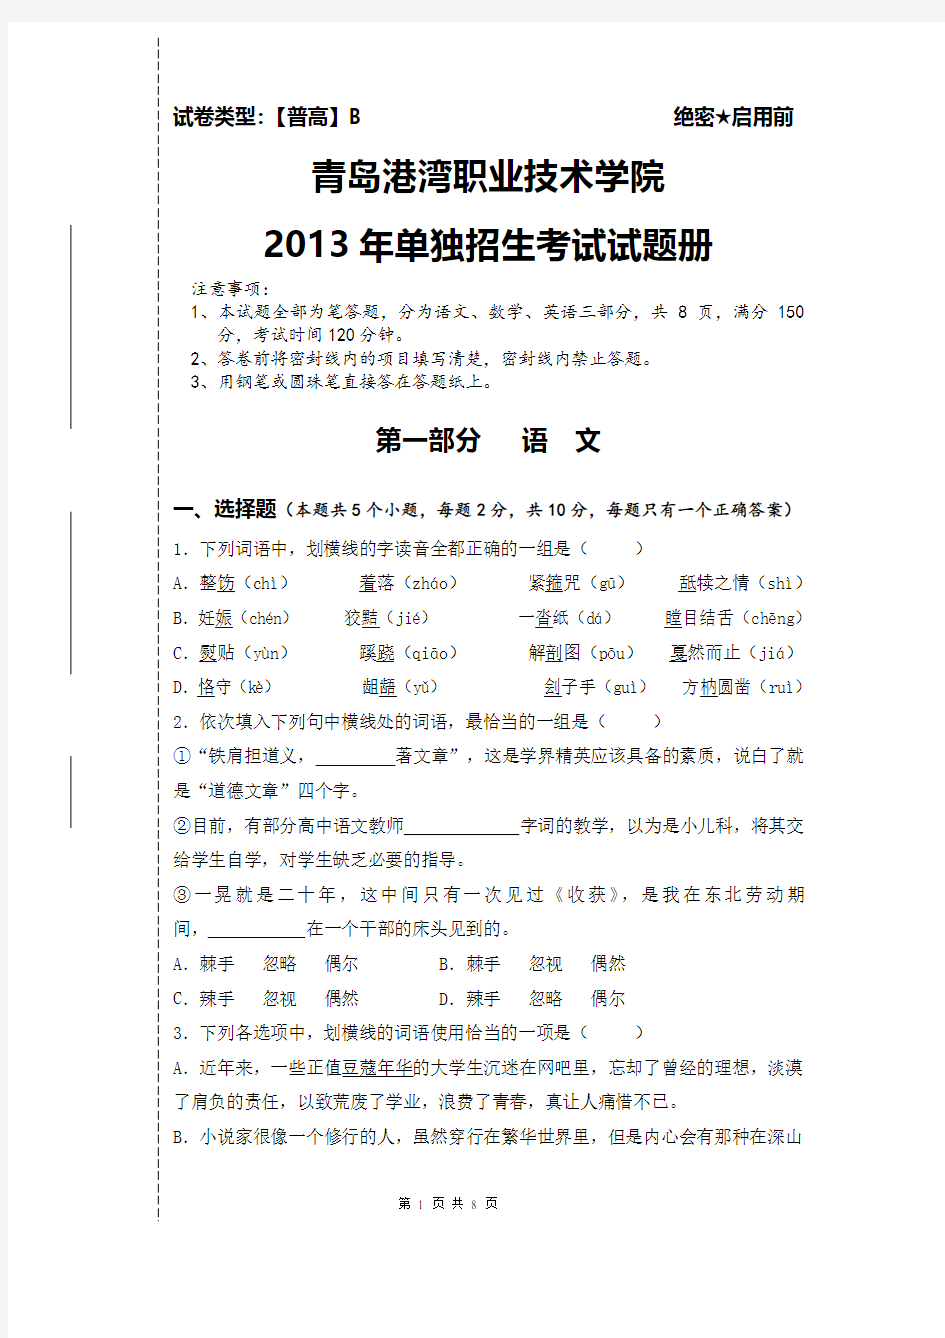 青岛港湾职业技术学院2013年单独招生考试试题册